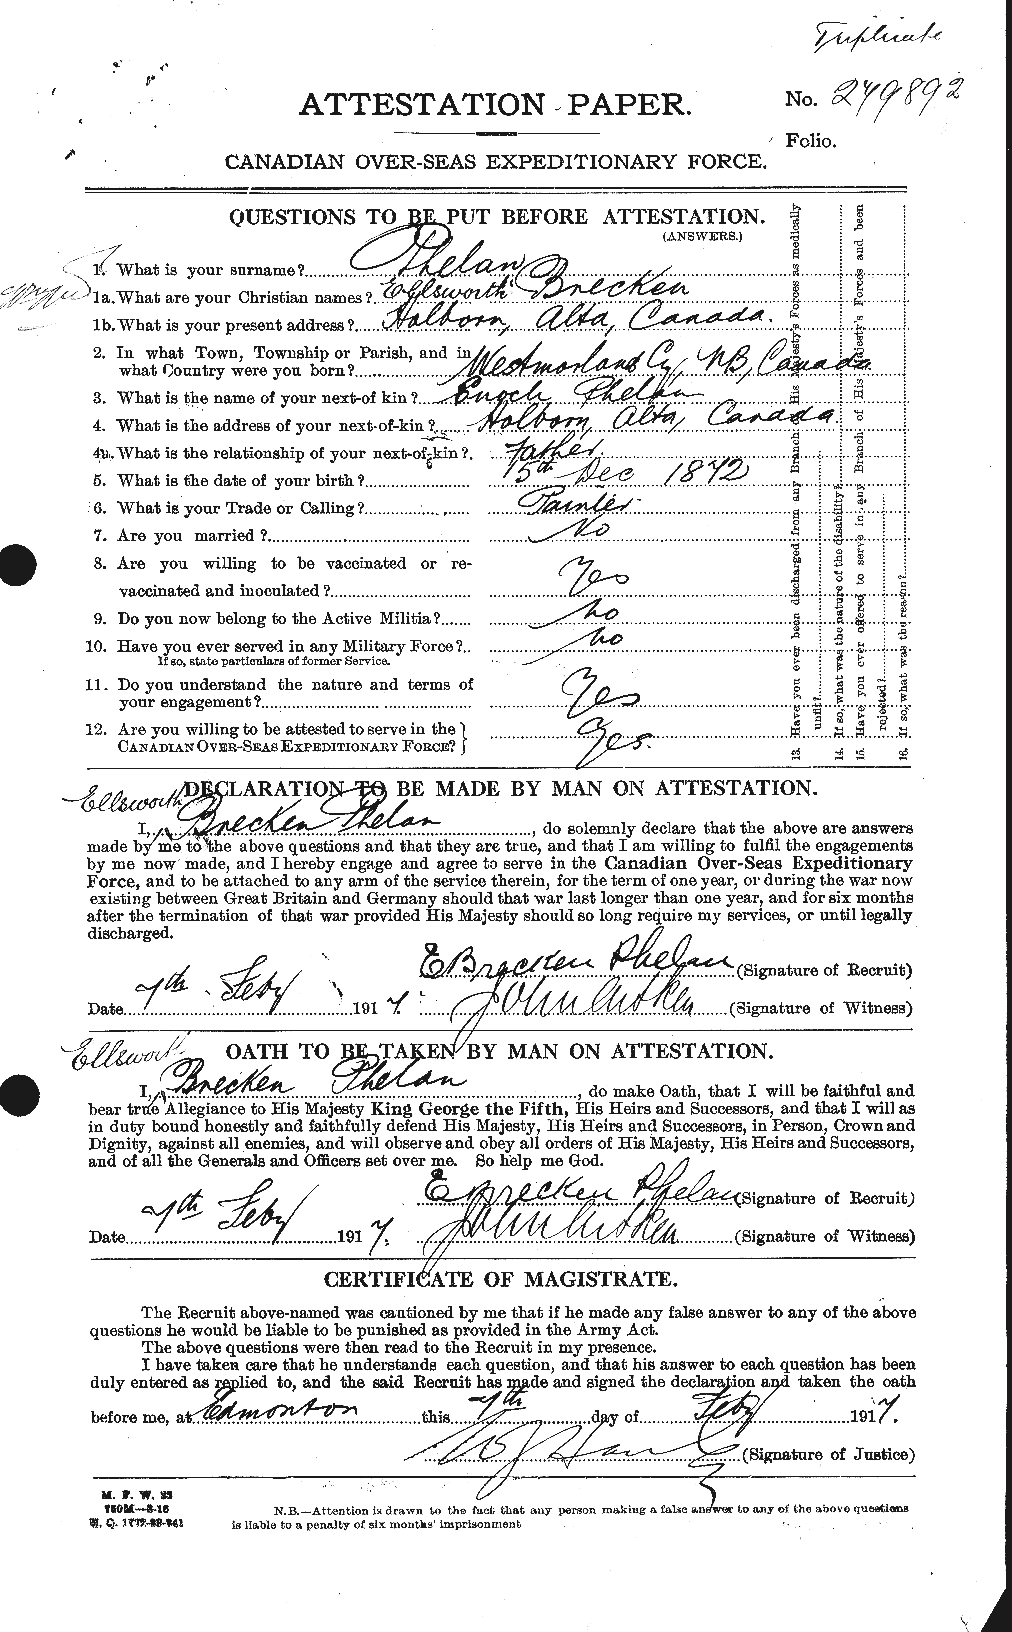 Dossiers du Personnel de la Première Guerre mondiale - CEC 576943a